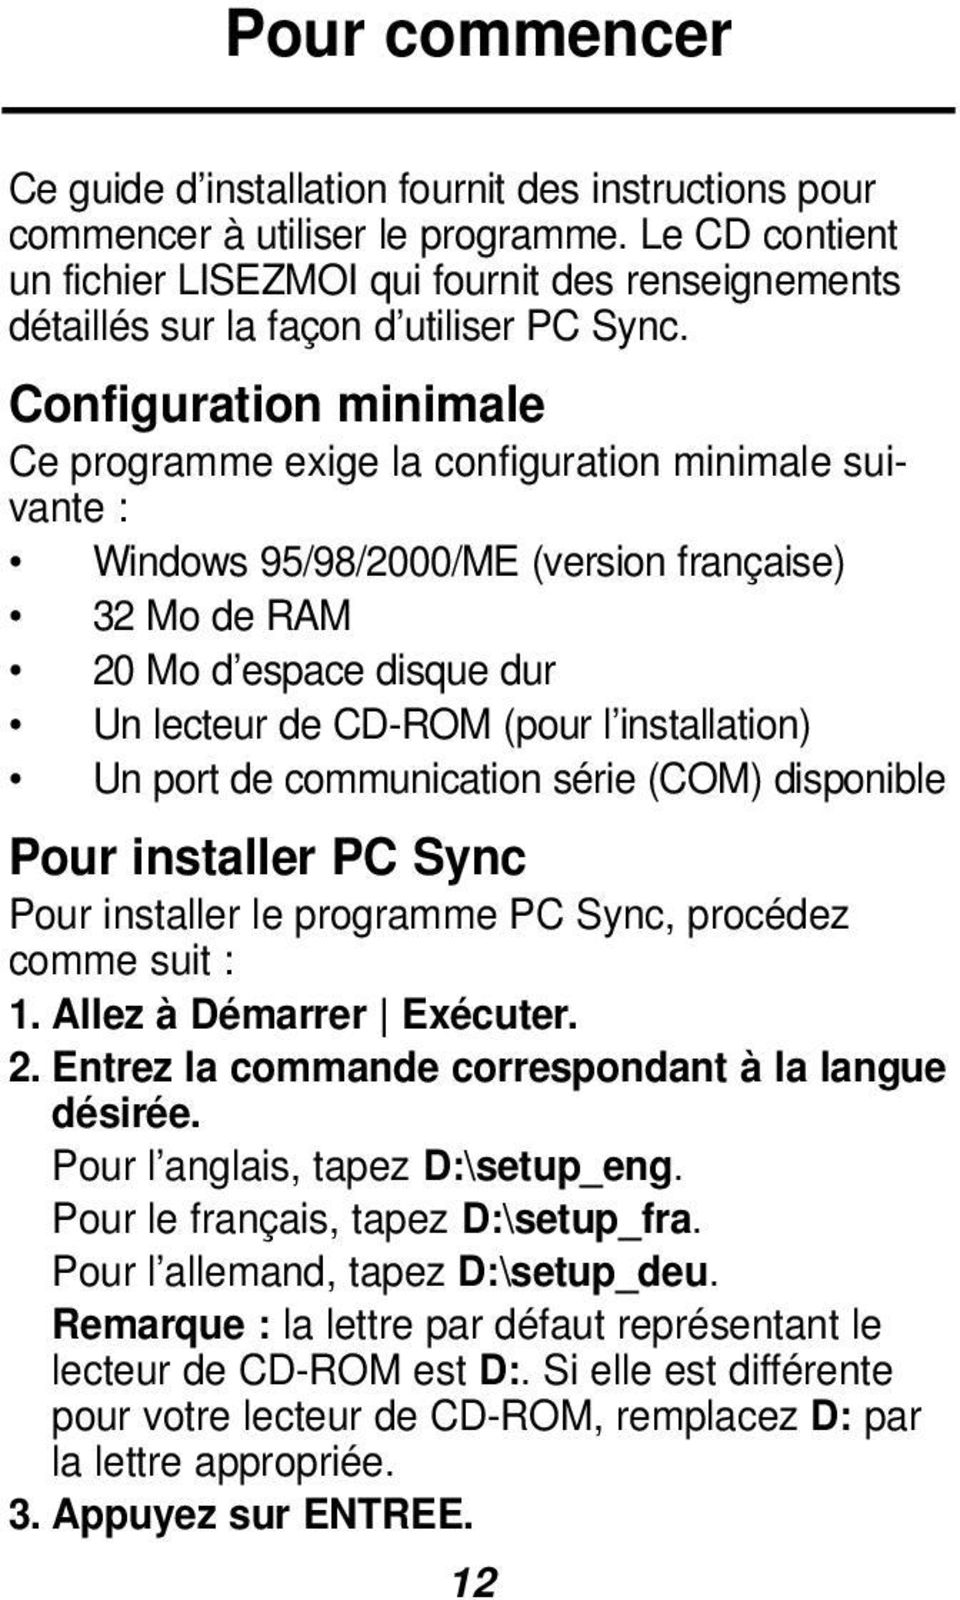 Configuration minimale Ce programme exige la configuration minimale suivante : Windows 95/98/2000/ME (version française) 32 Mo de RAM 20 Mo d espace disque dur Un lecteur de CD-ROM (pour l